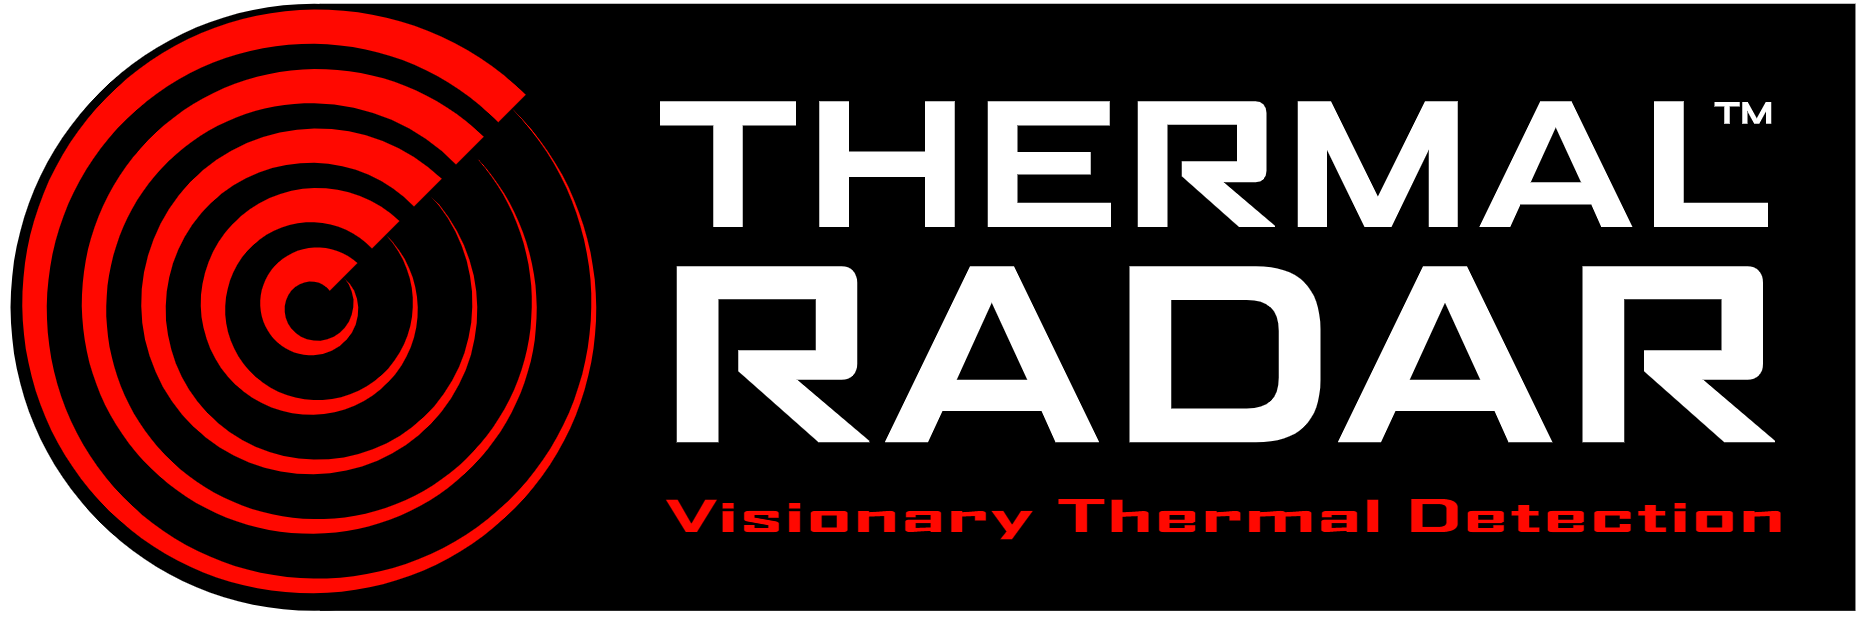 Thermal Radar Horizontal Logo